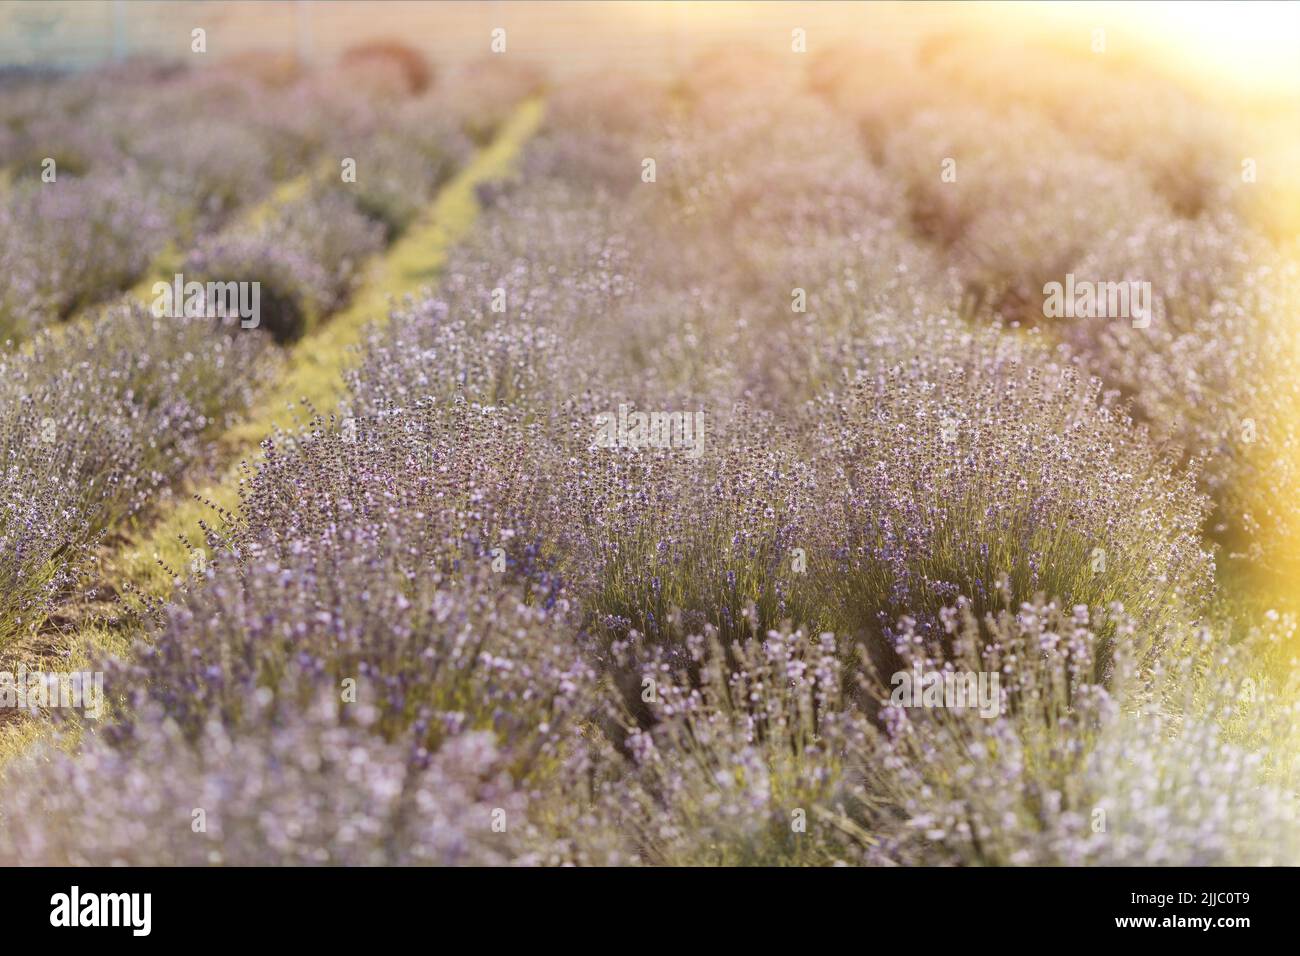 Ein schönes Bild eines Lavendelfeldes, das in einem Sommer gepflanzt wurde Stockfoto